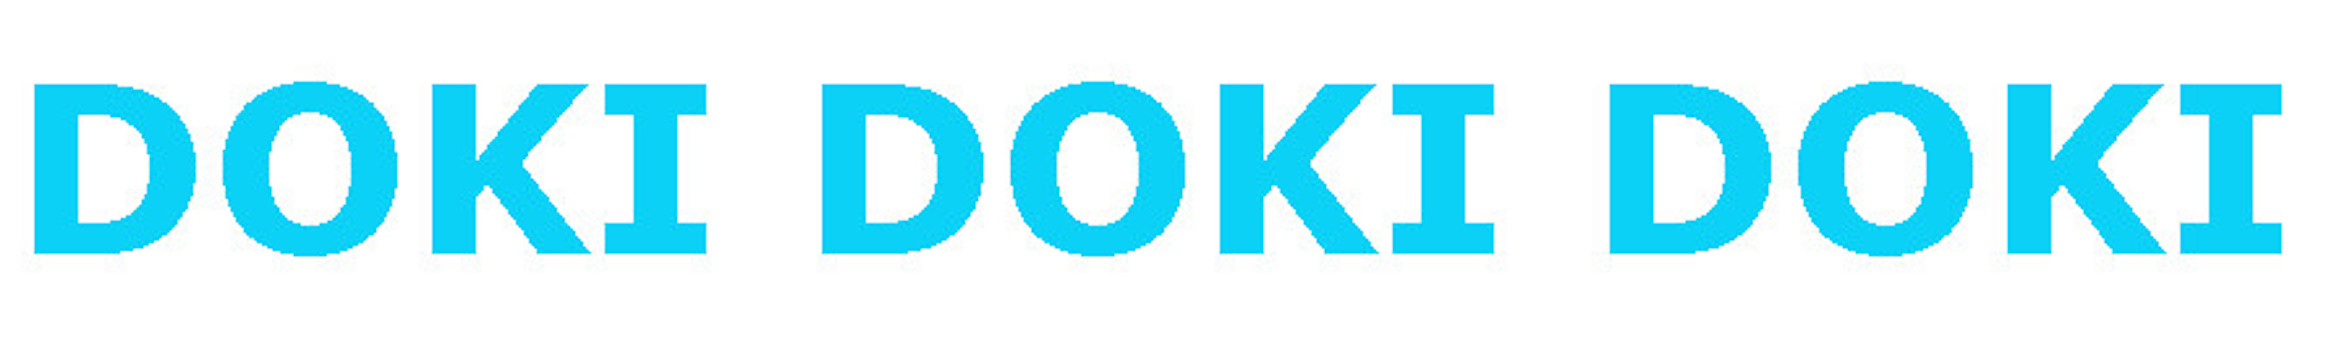 dokidokidoki.com